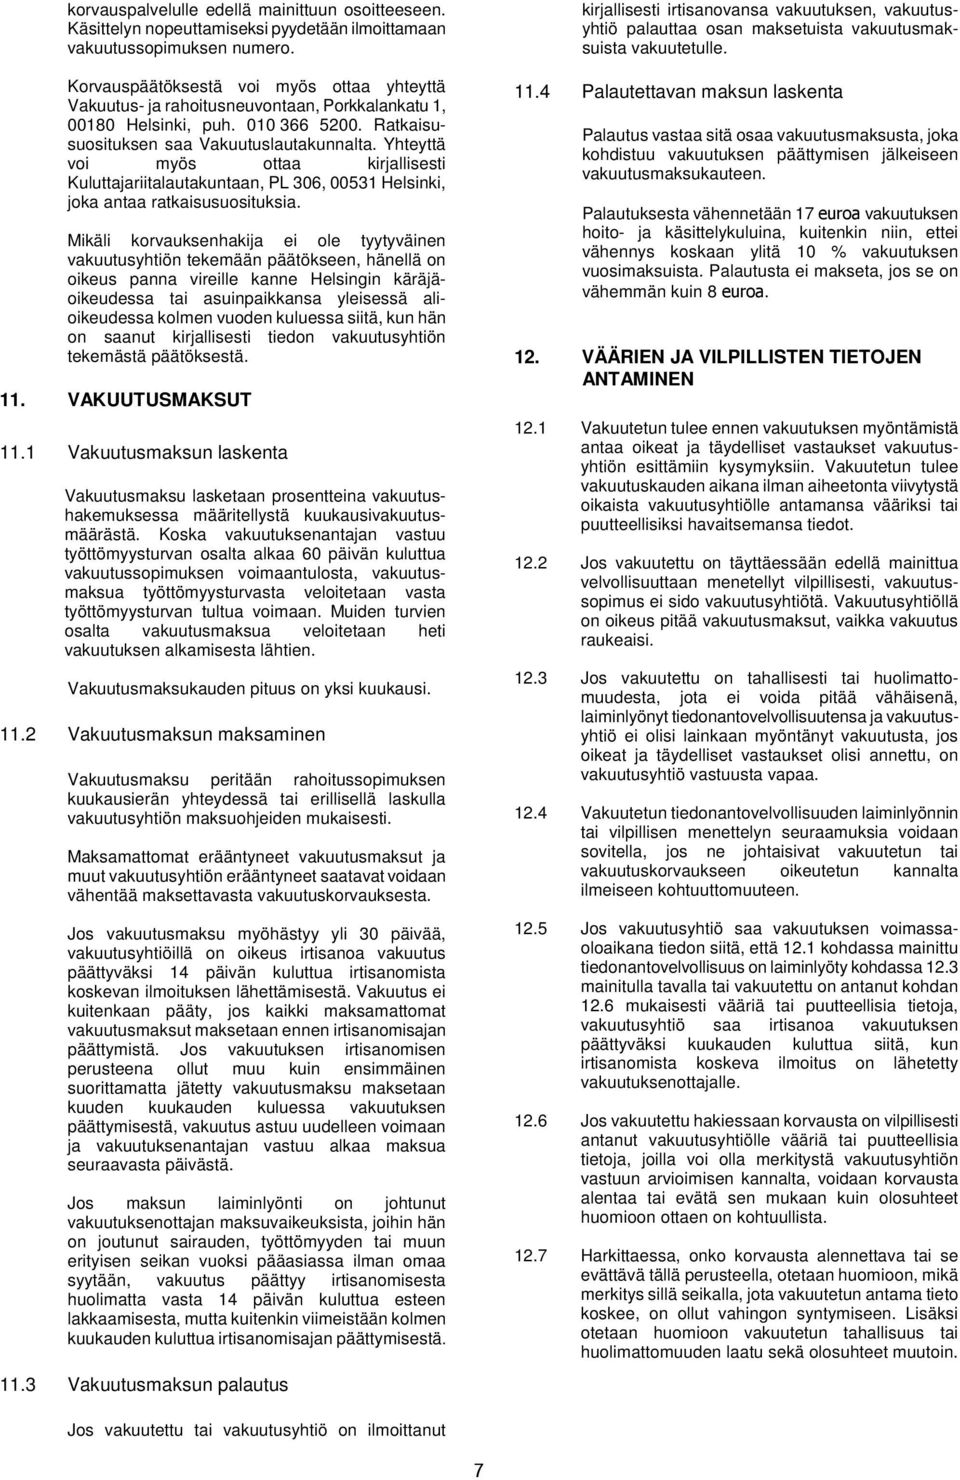 Yhteyttä voi myös ottaa kirjallisesti Kuluttajariitalautakuntaan, PL 306, 00531 Helsinki, joka antaa ratkaisusuosituksia.